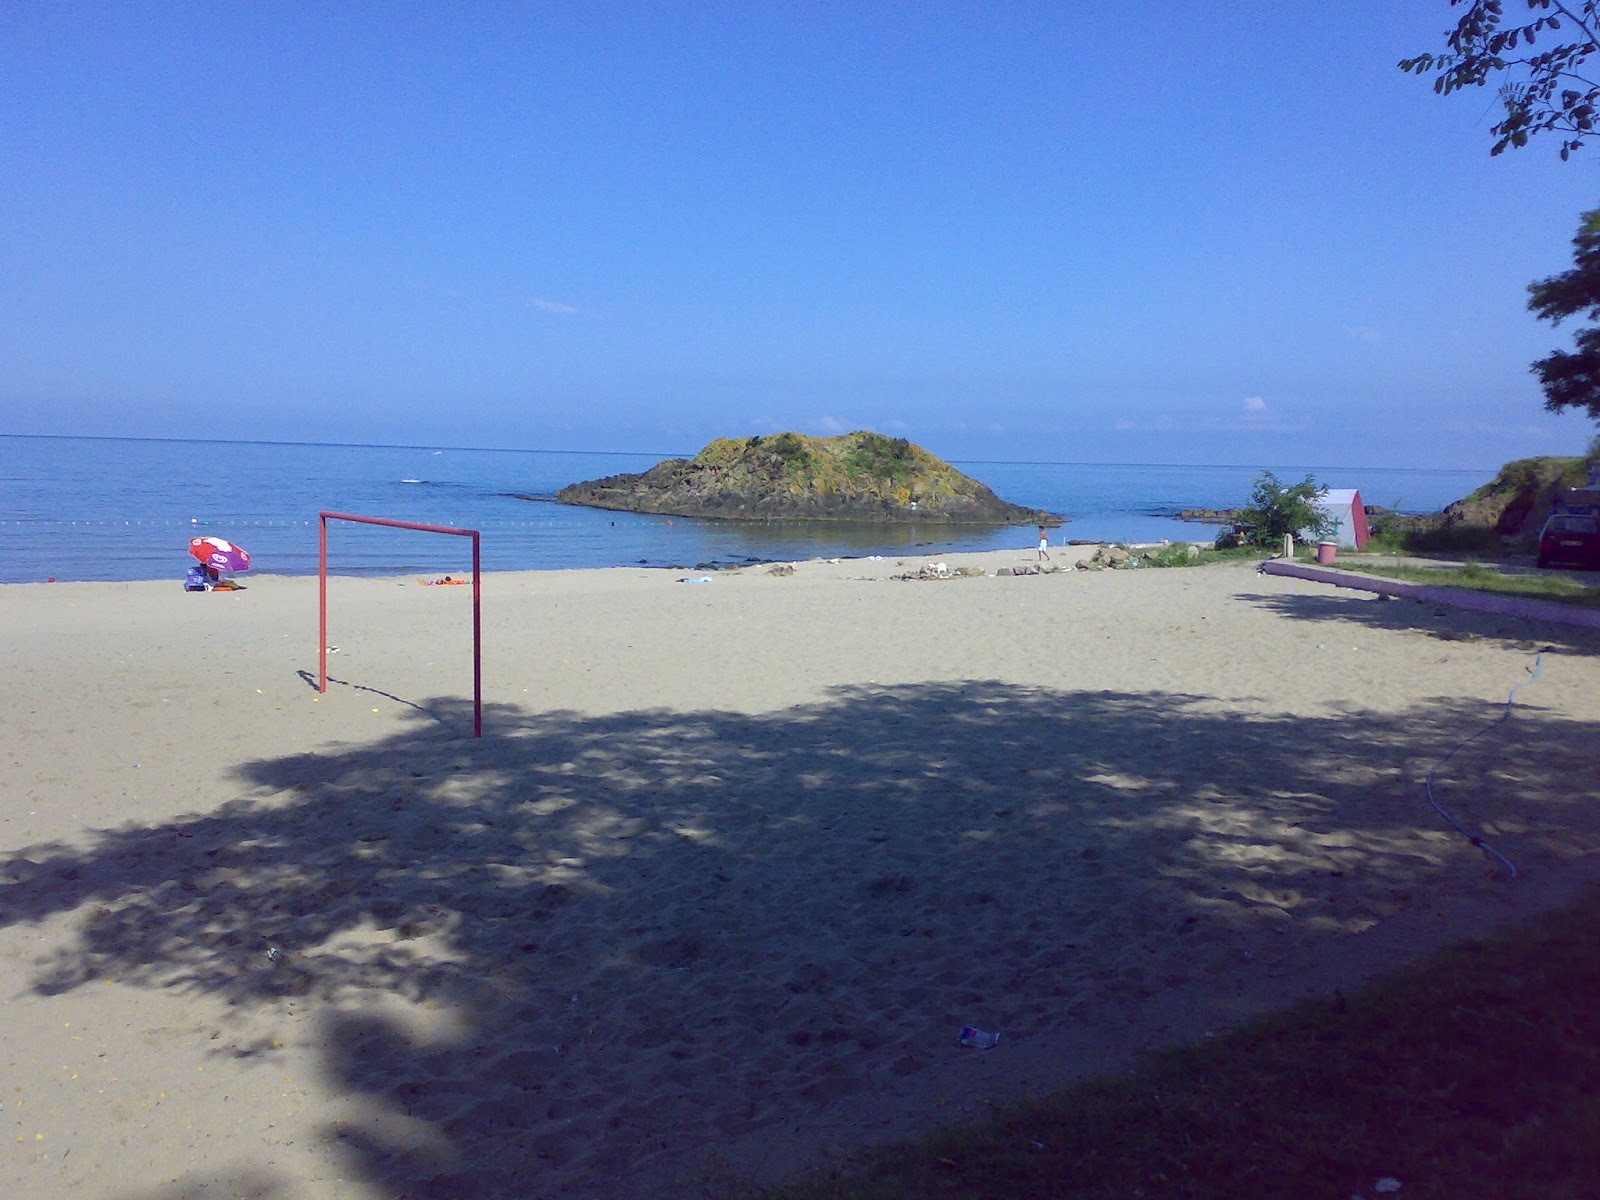 Zdjęcie Tirebolu Beach z poziomem czystości wysoki